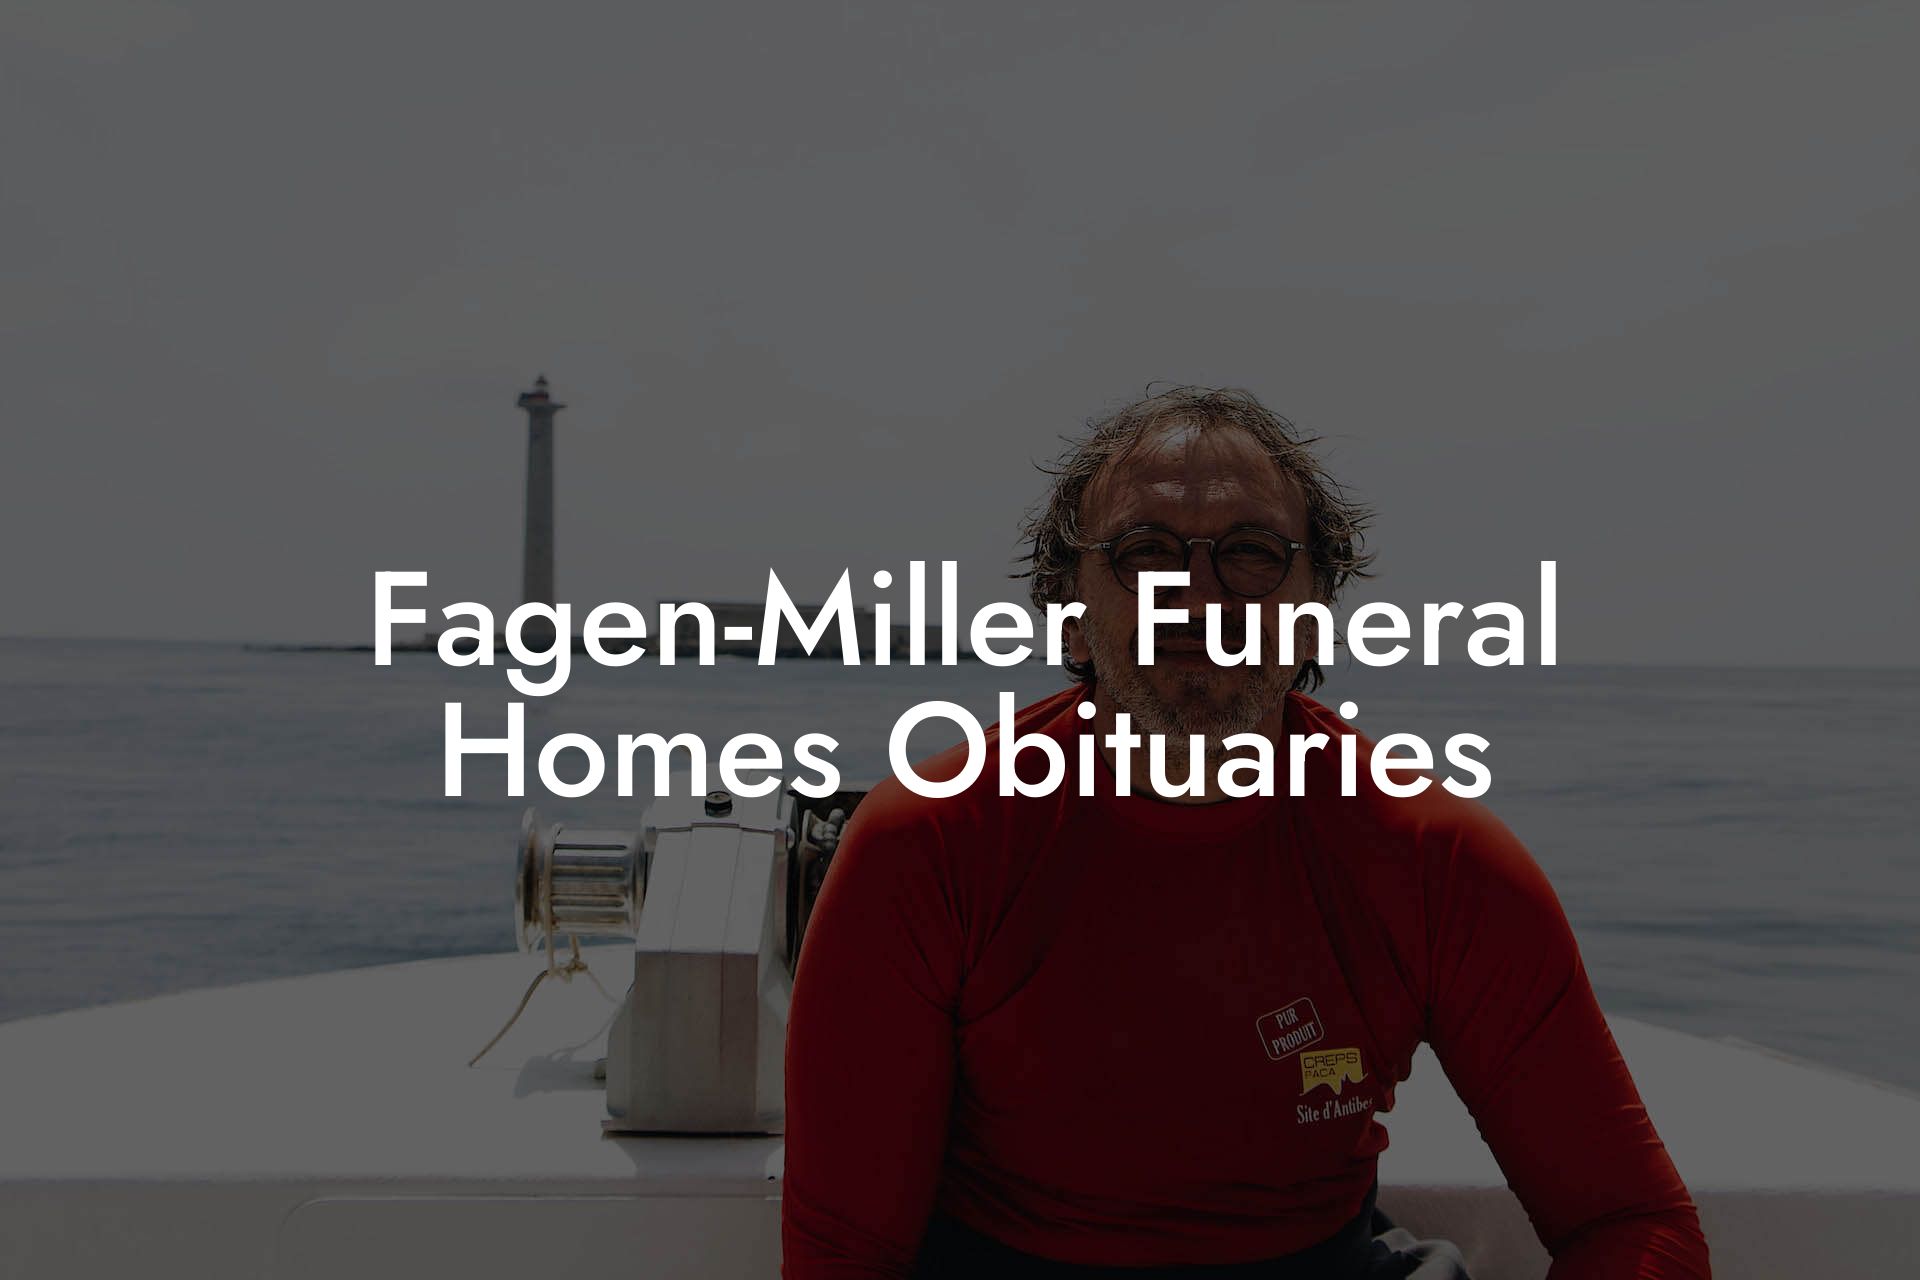 Fagen-Miller Funeral Homes Obituaries